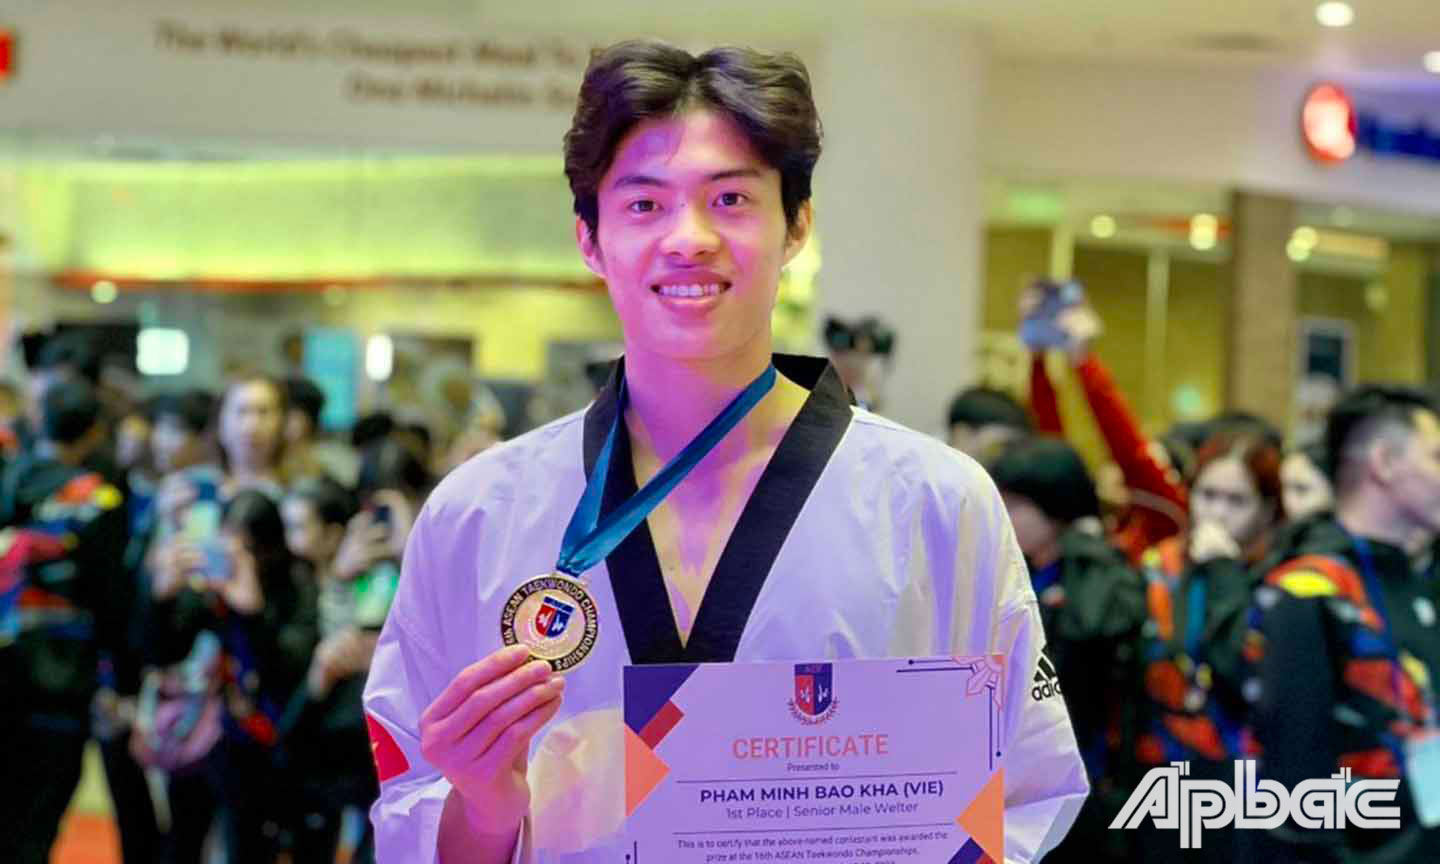 VĐV Phạm Minh Bảo Kha đang là một trong những VĐV giàu thành tích của Taekwondo Tiền Giang khi đoạt nhiều huy chương ở đấu trường quốc tế.